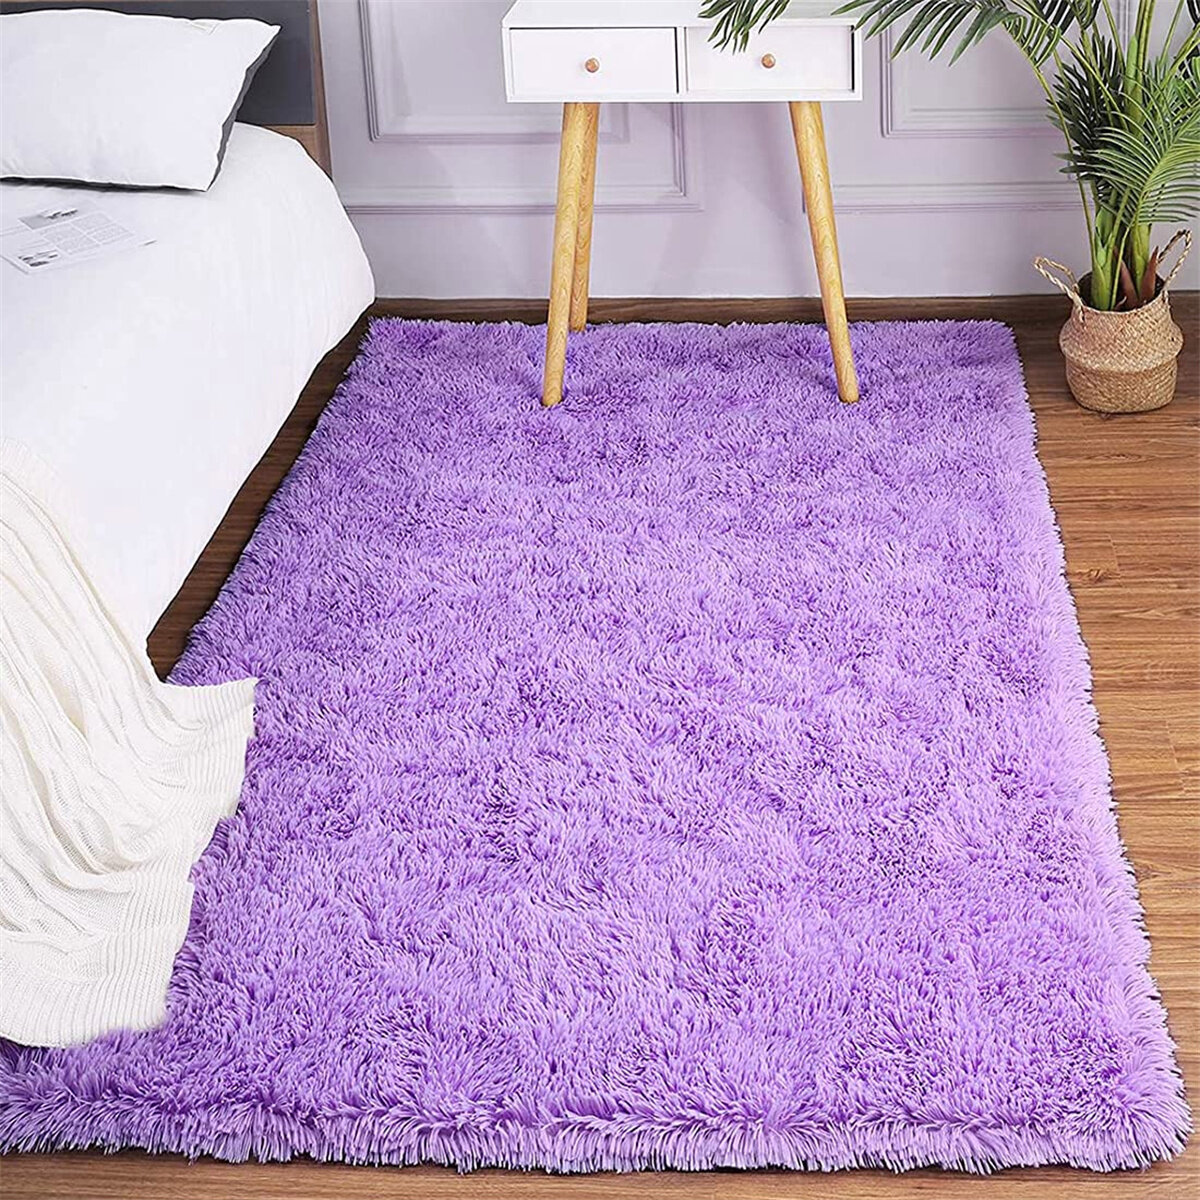 Fluffy Rugs Anti-Slip Soft Carpet Mat Living Room Floor Bedroom Livingroom Decor 